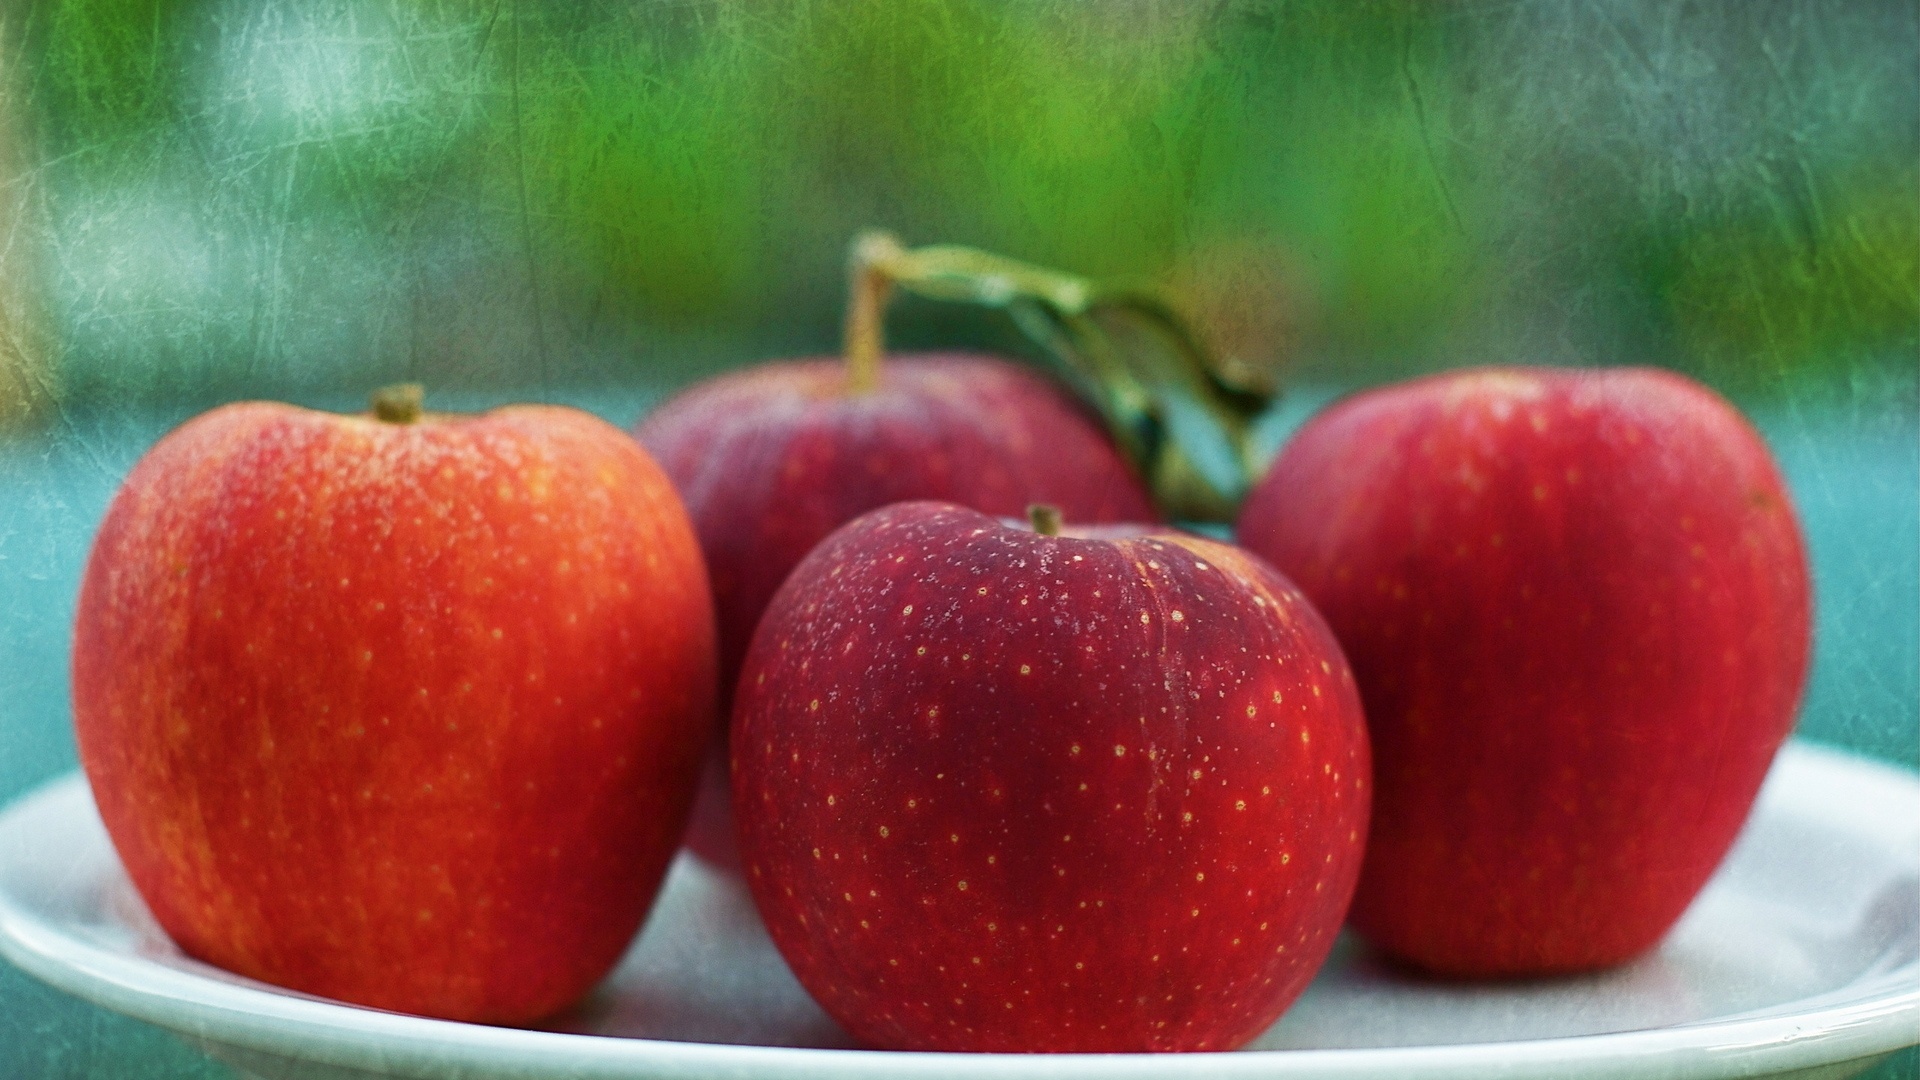 Apple Fruit desktop wallpaper hd